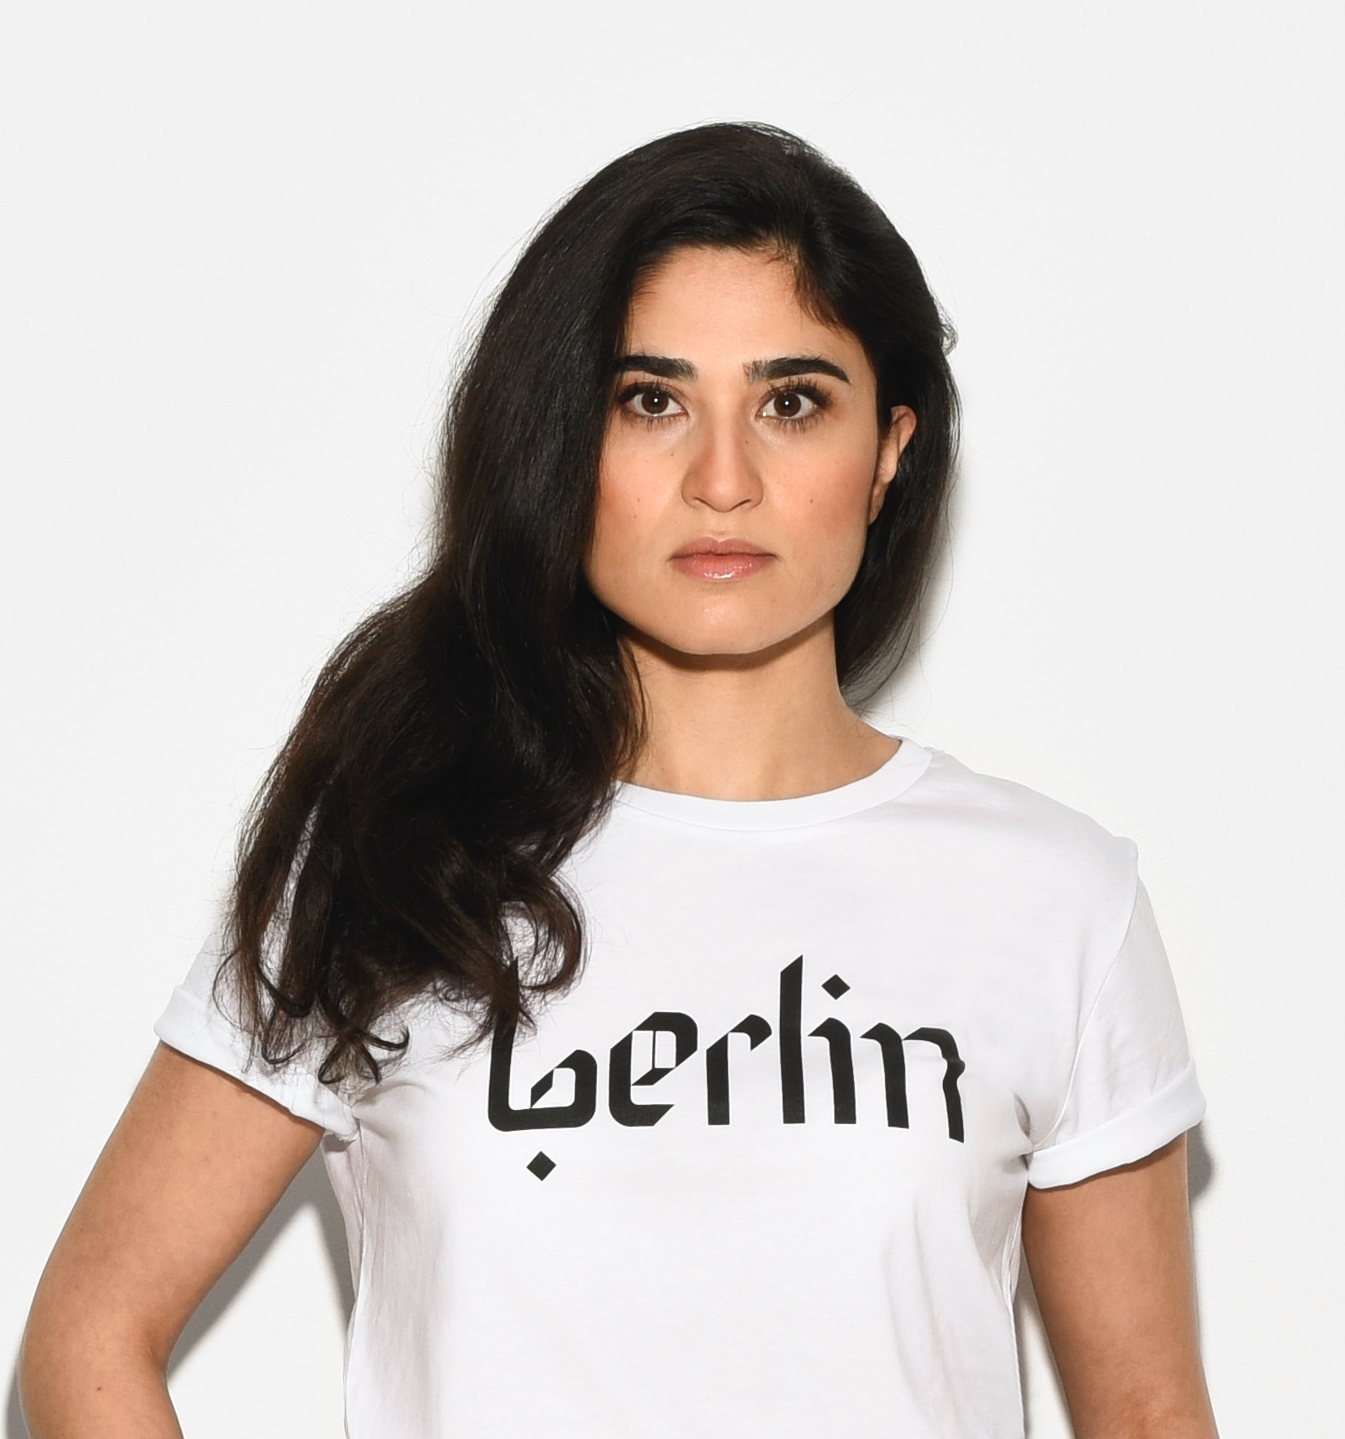 Anahita Sadighi - ist die persische Kunstszene diverser als die deutsche?